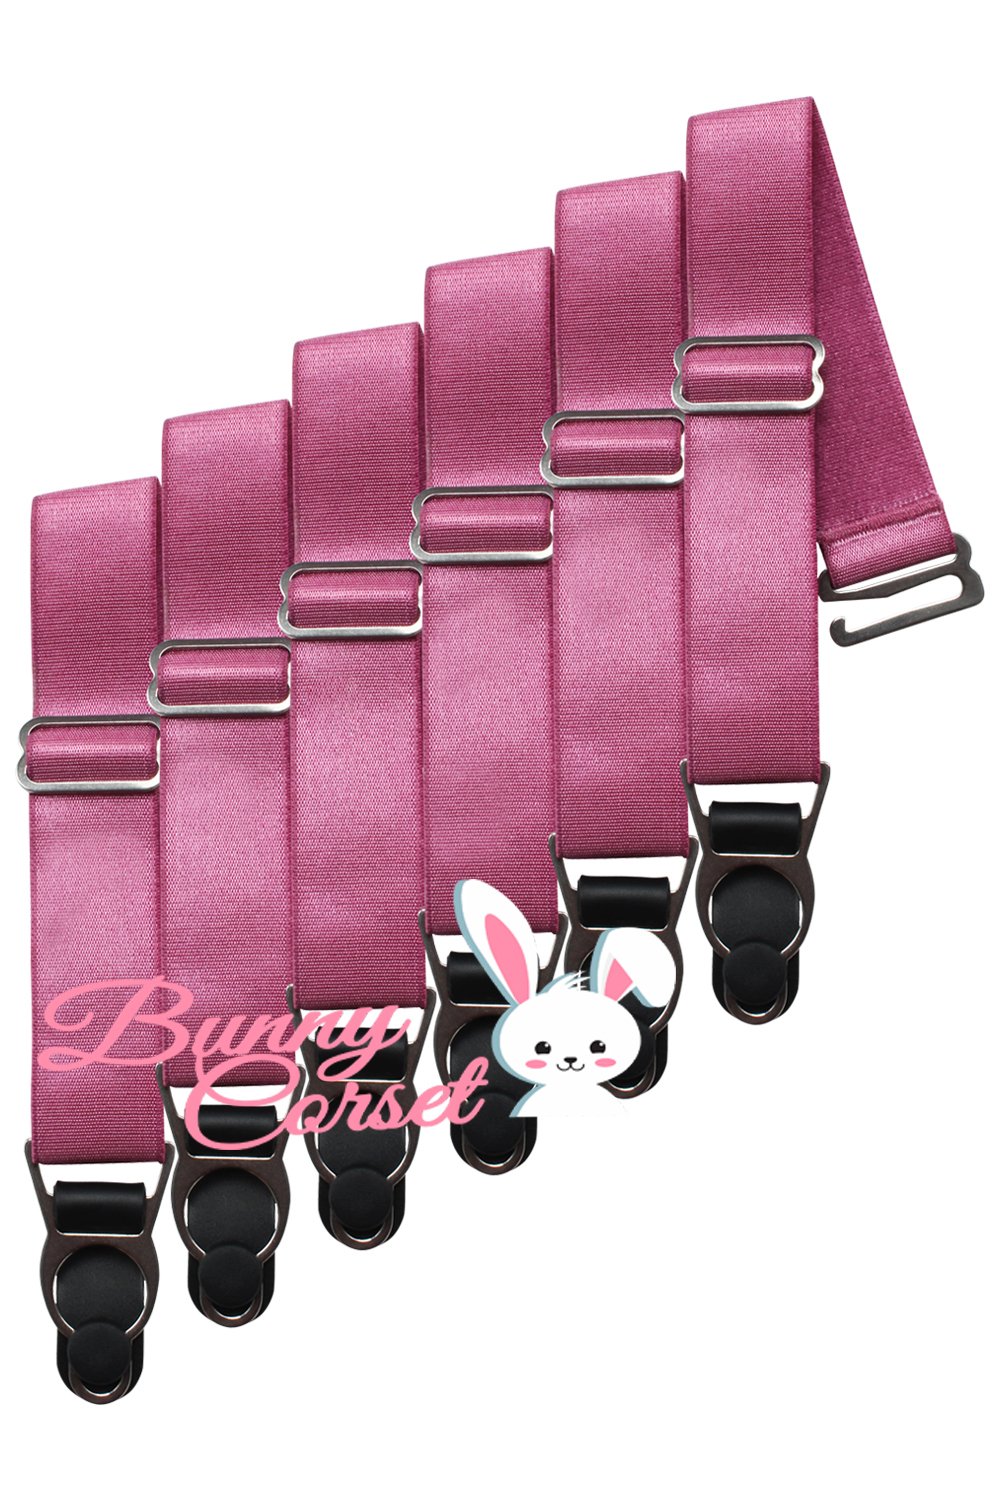 6 x Steel Suspender Clips in Ivory – Bunny Corset